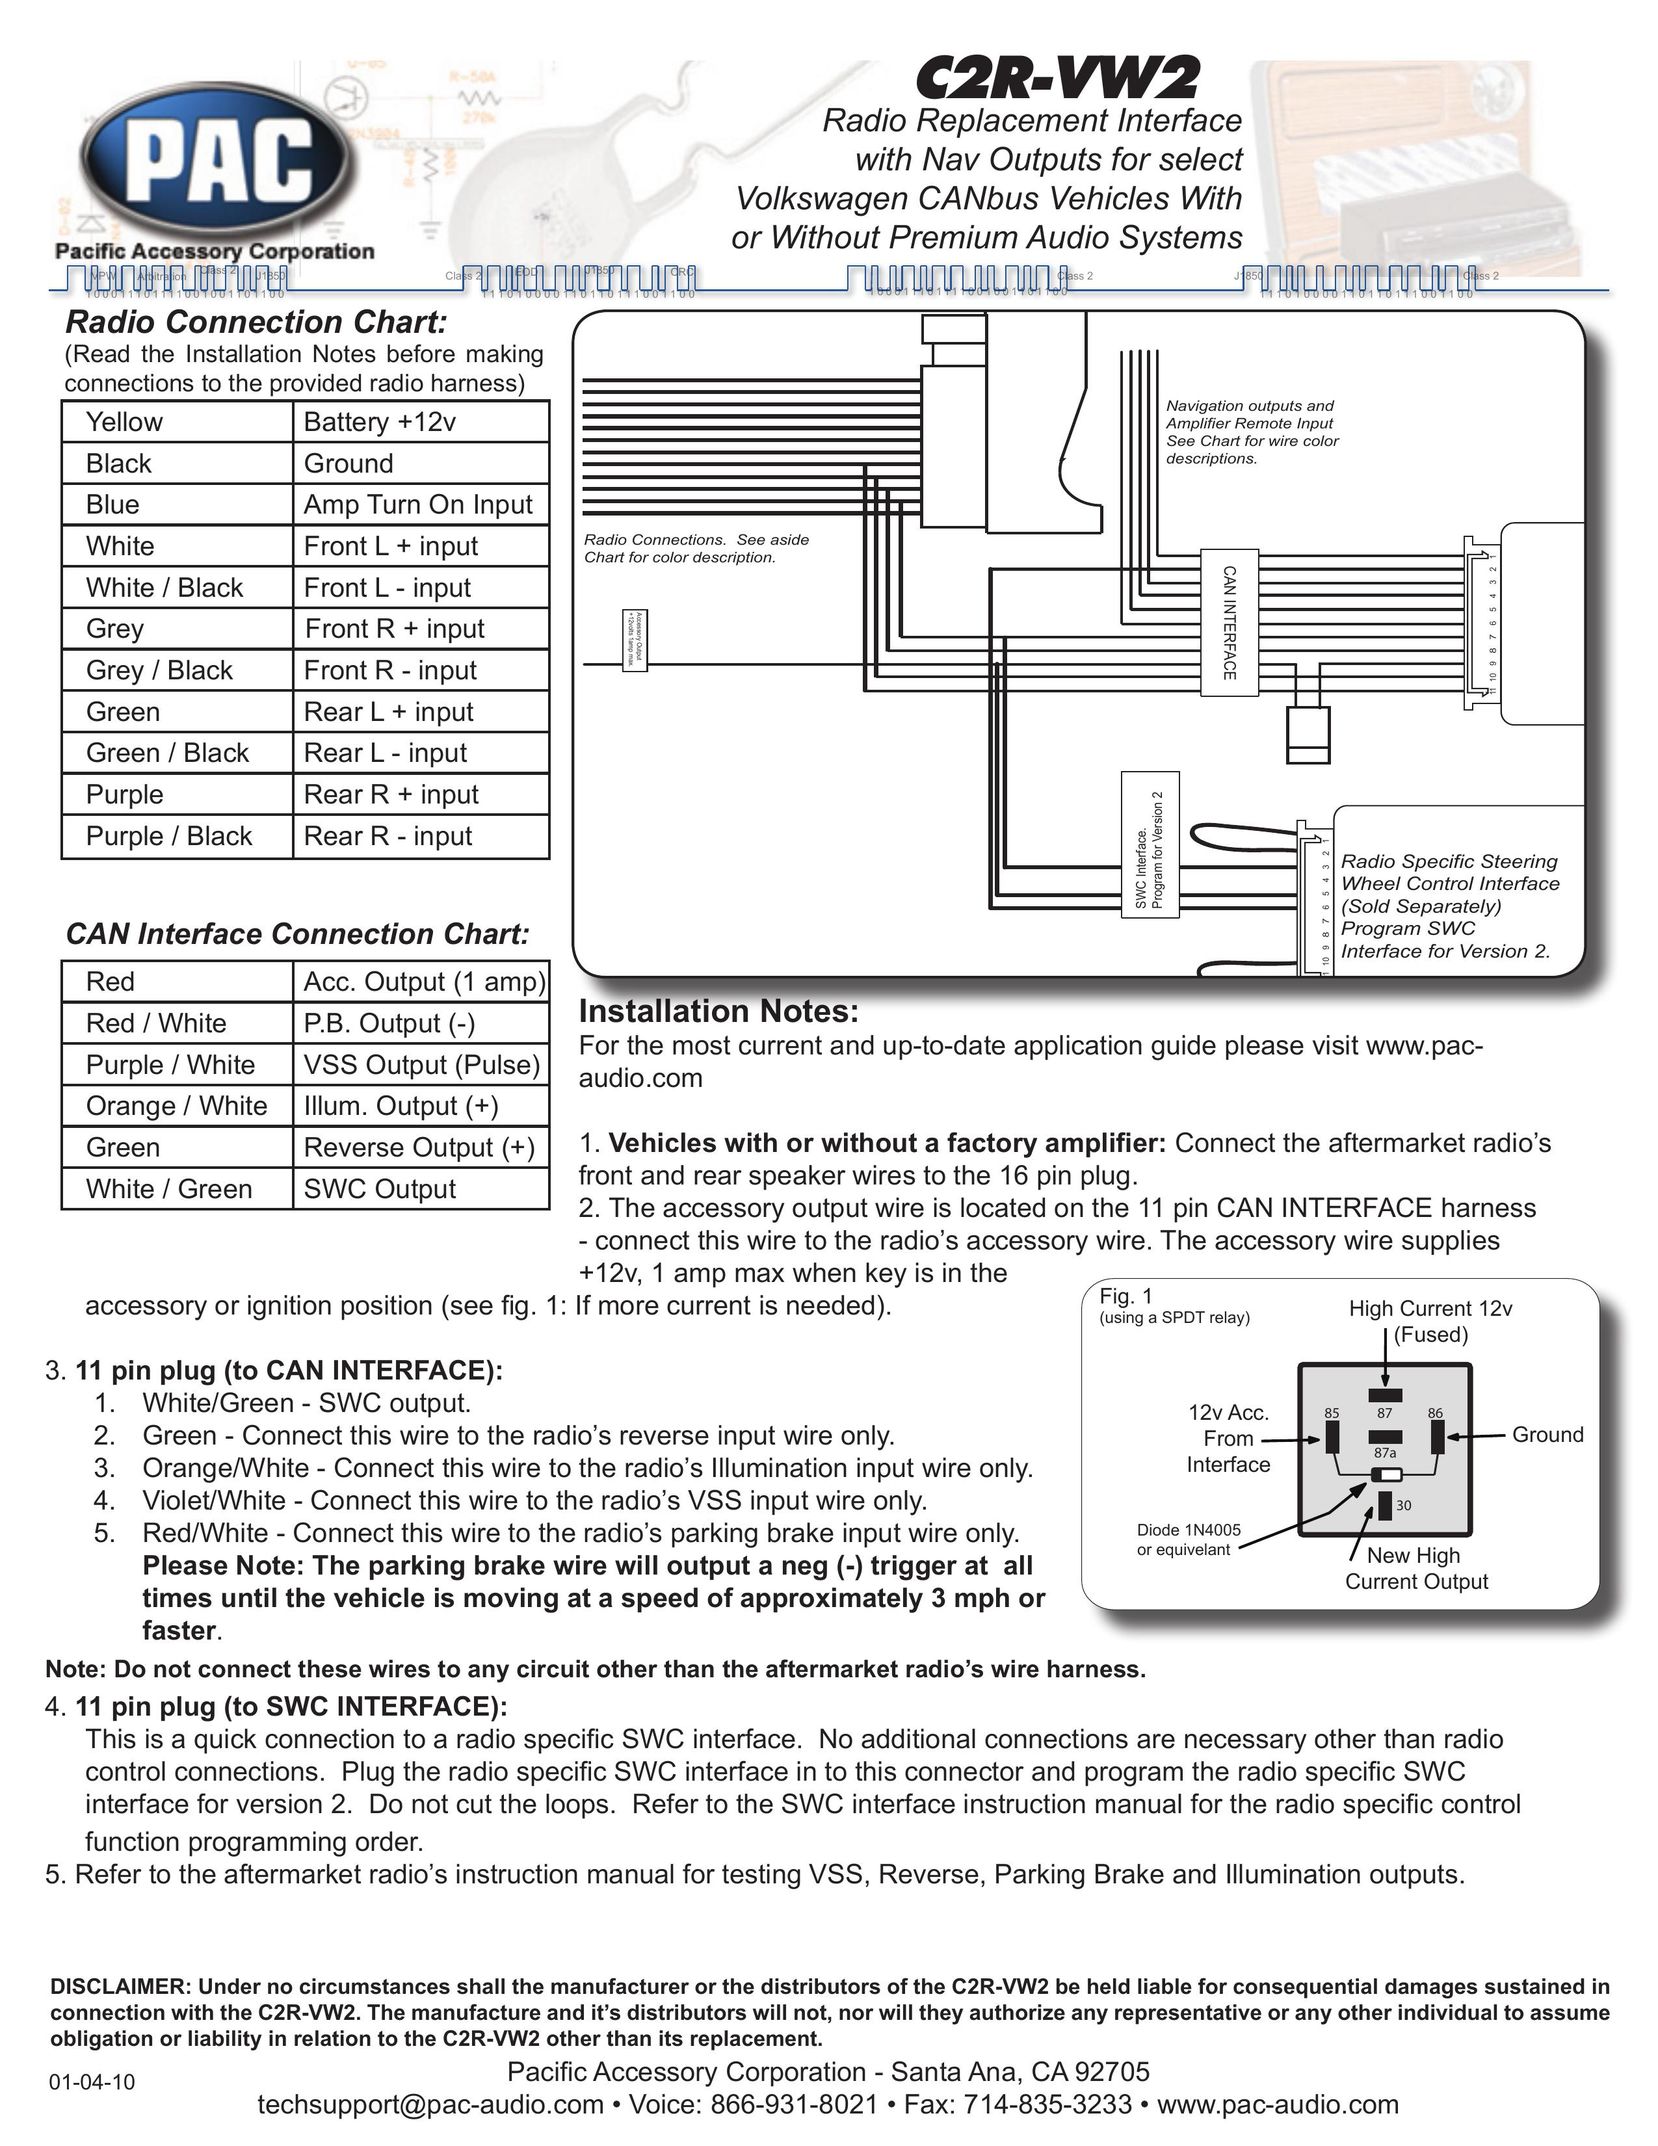 PAC C2R-VW2 Car Satellite Radio System User Manual